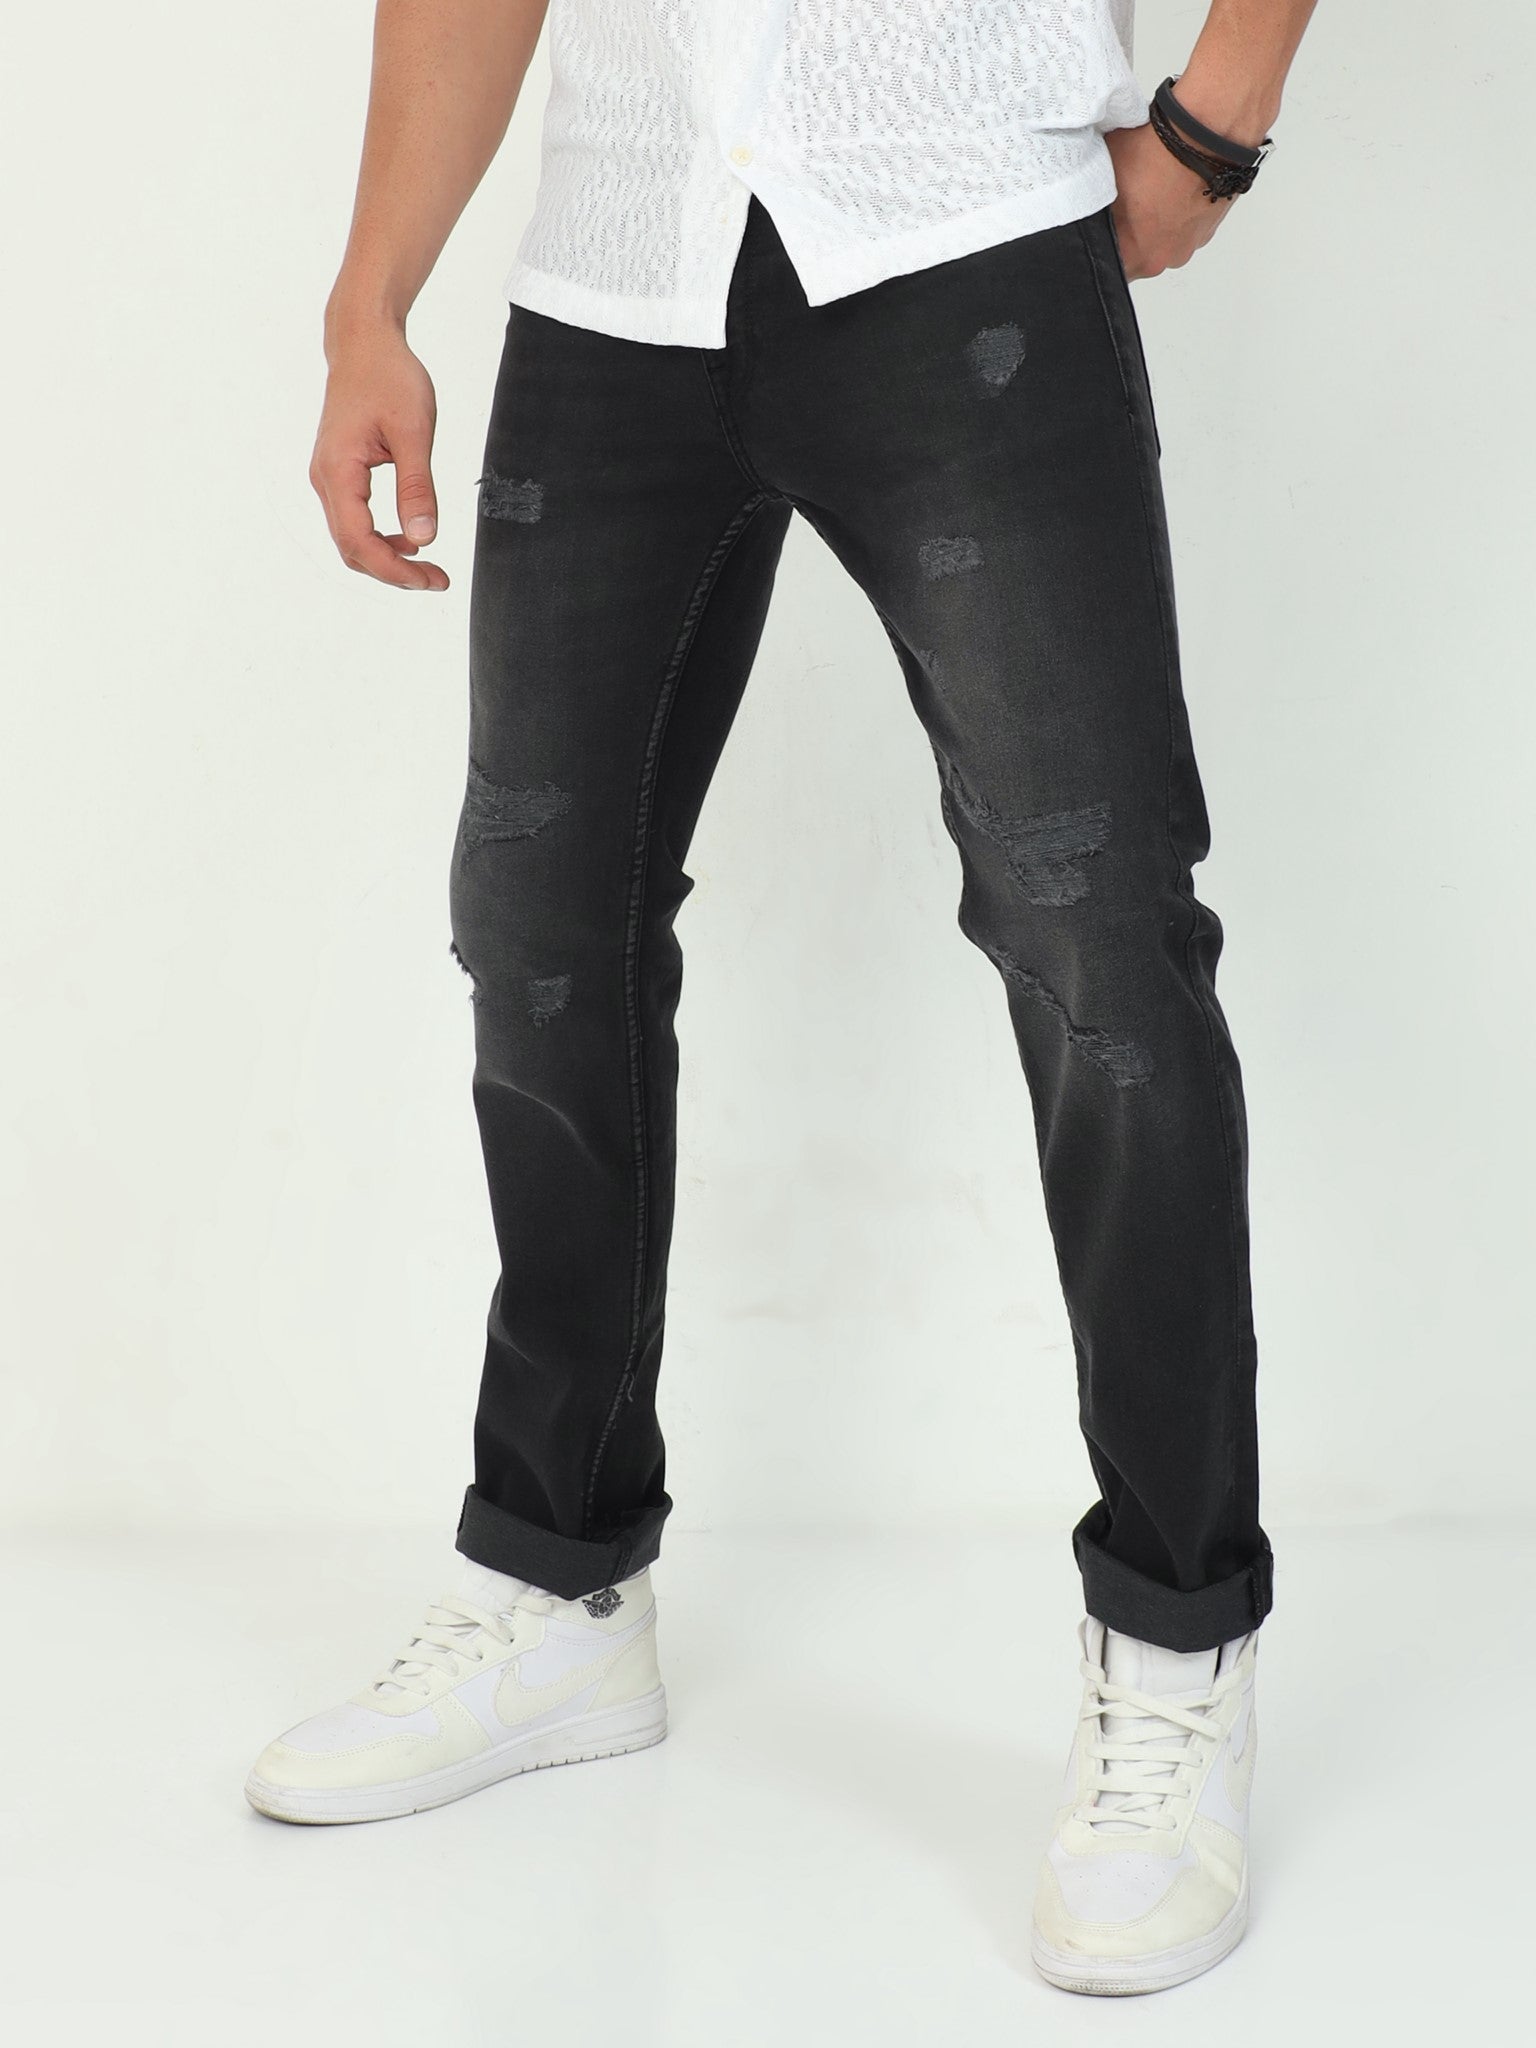 Black Distressed Slim Fit Jeans for Men 